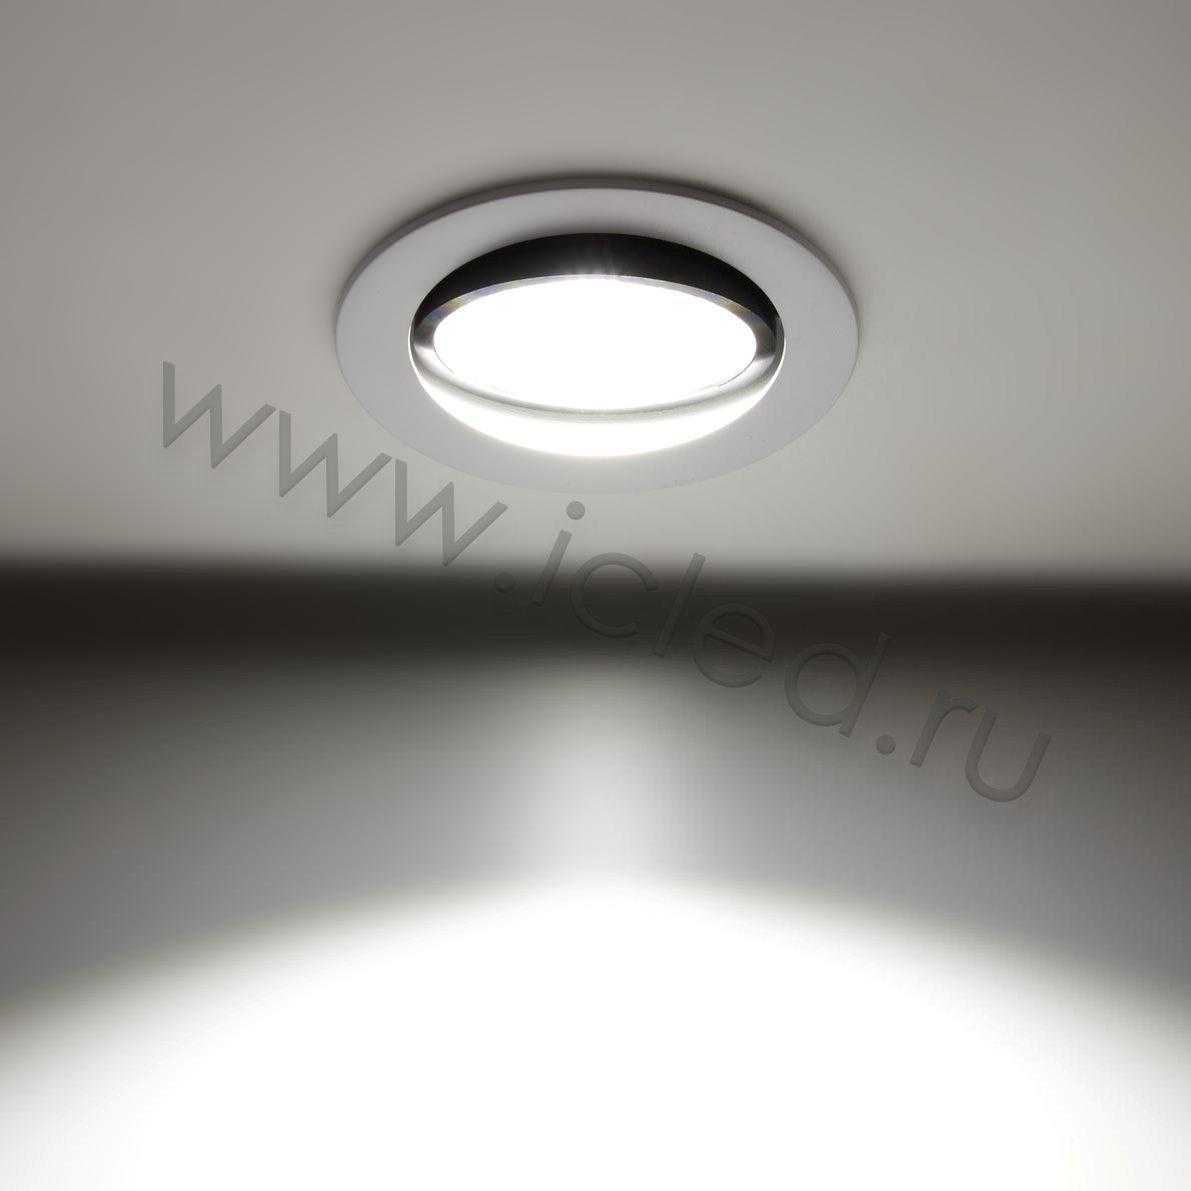 Светодиодные светильники Светодиодный светильник встраиваемый Alpine CX-R-COB110B B302 (220V, 10W, day white)